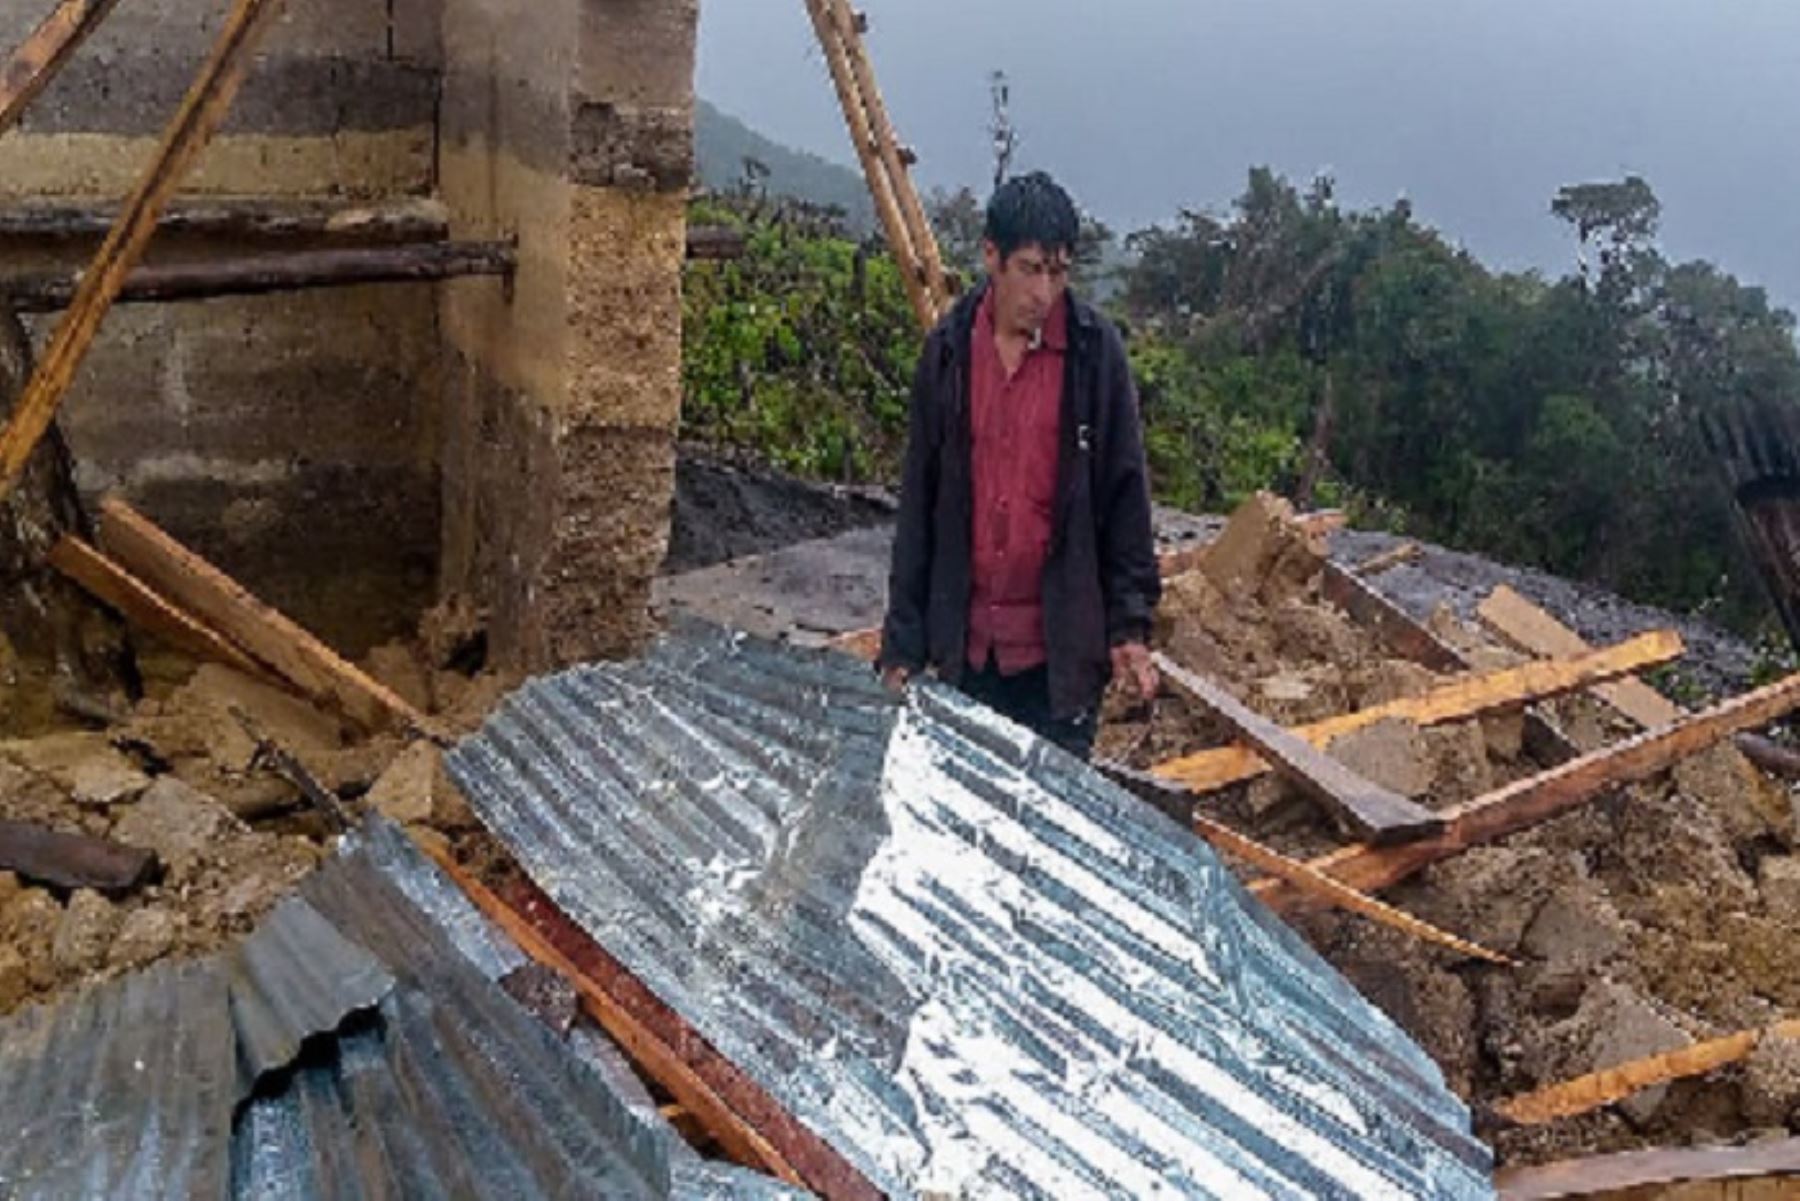 En el distrito de Panao, provincia de Pachitea, una vivienda colapsó en el caserío de San Juan, debido a las fuertes precipitaciones pluviales.